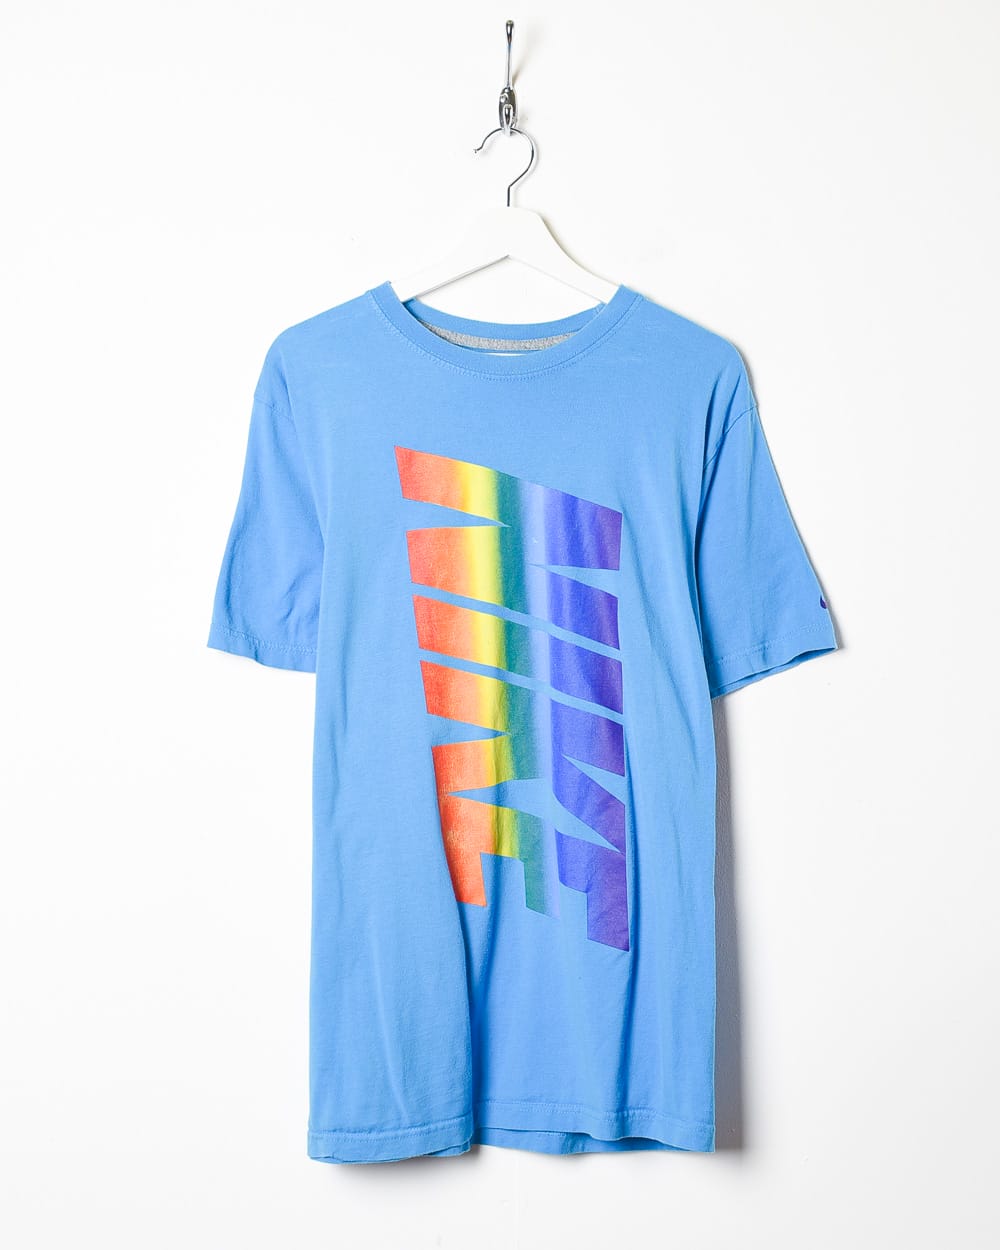 Baby Nike Rainbow T-Shirt - X-Large